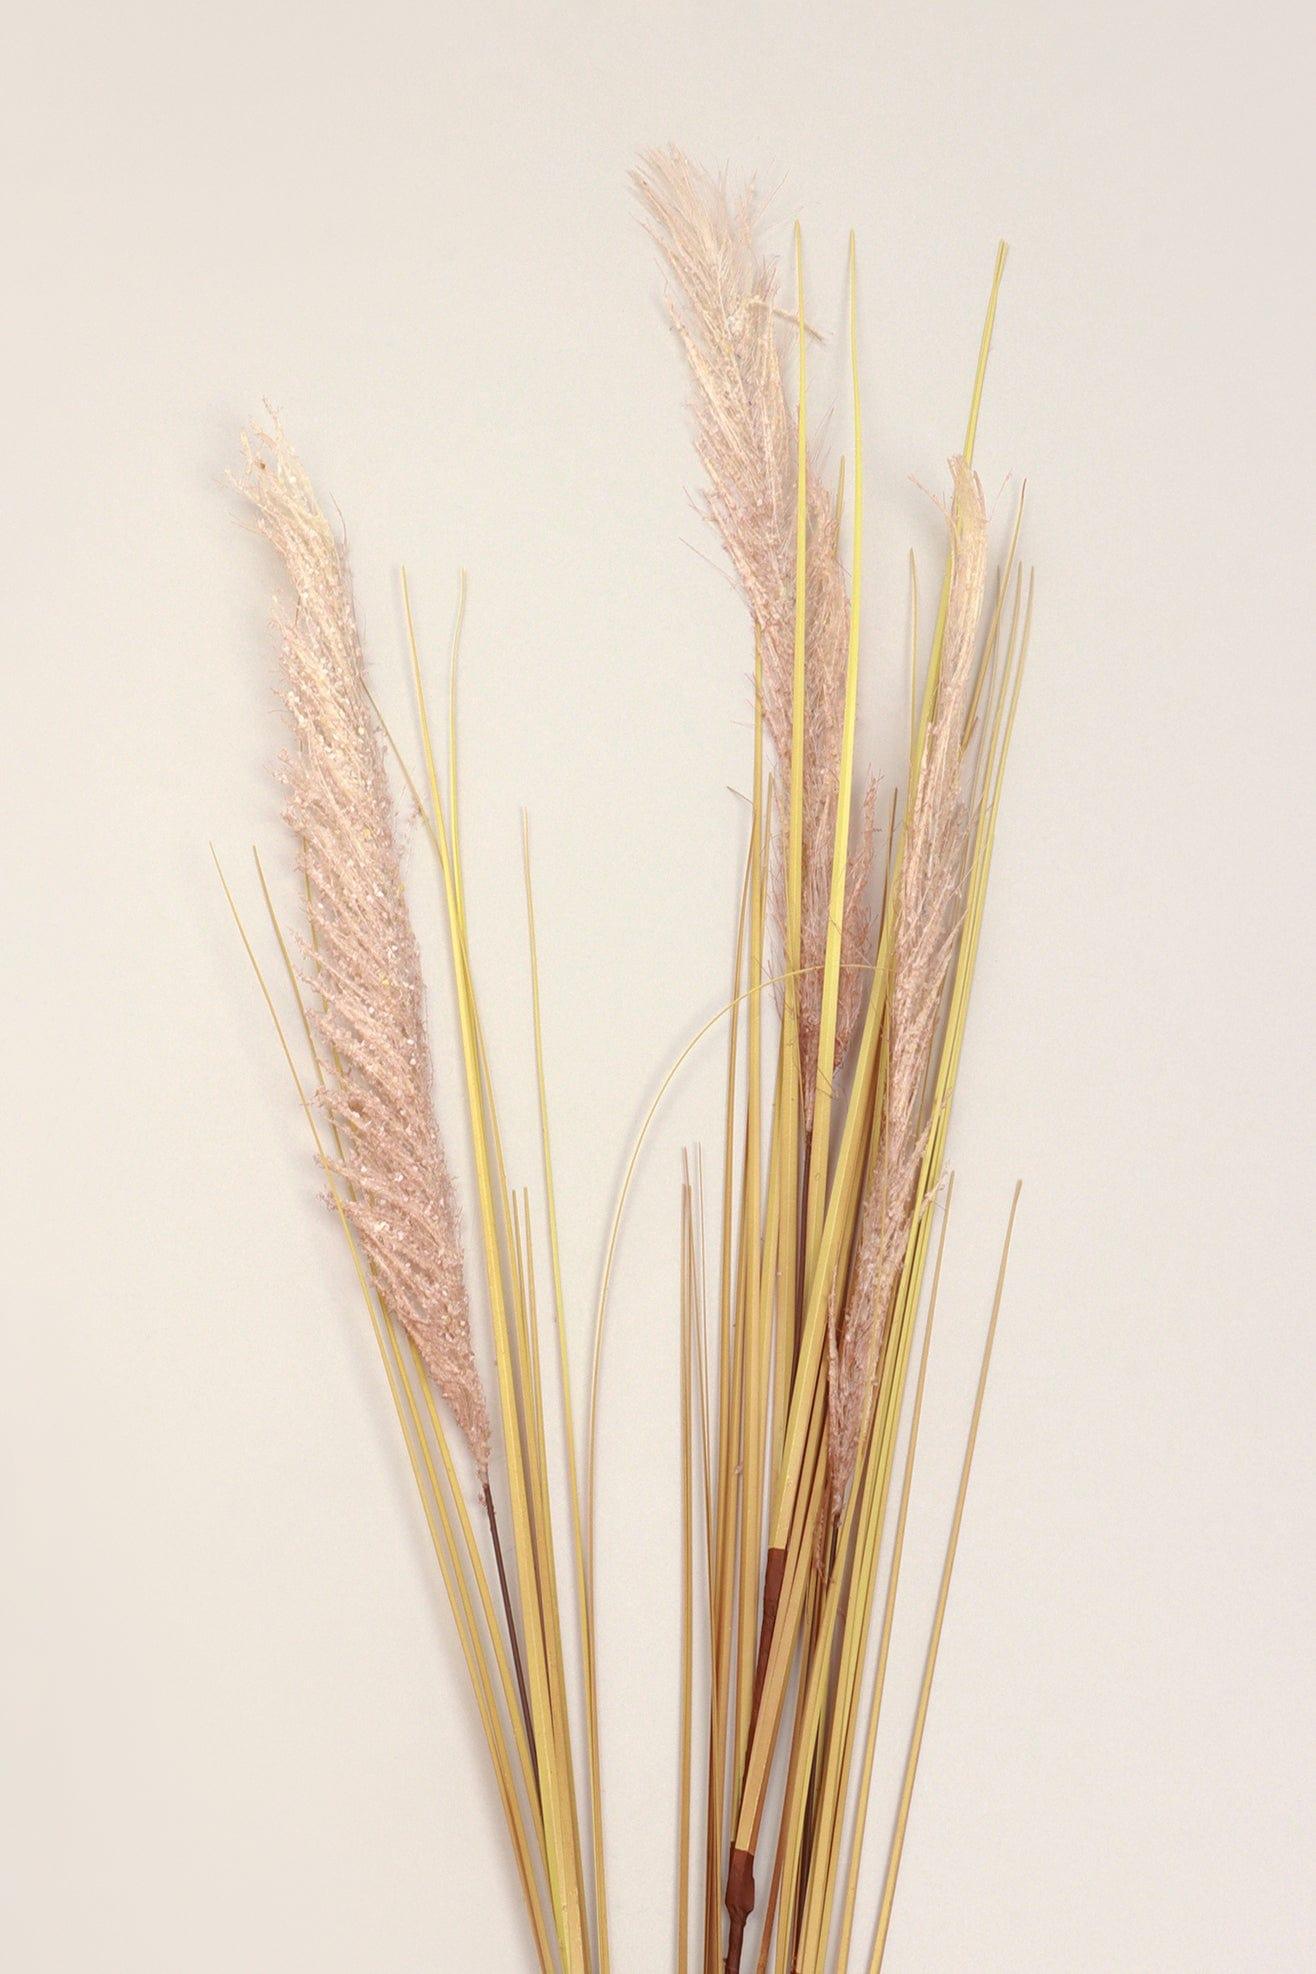 G Decor Home & Garden Artificial Tall Wild Grass Reed Stem